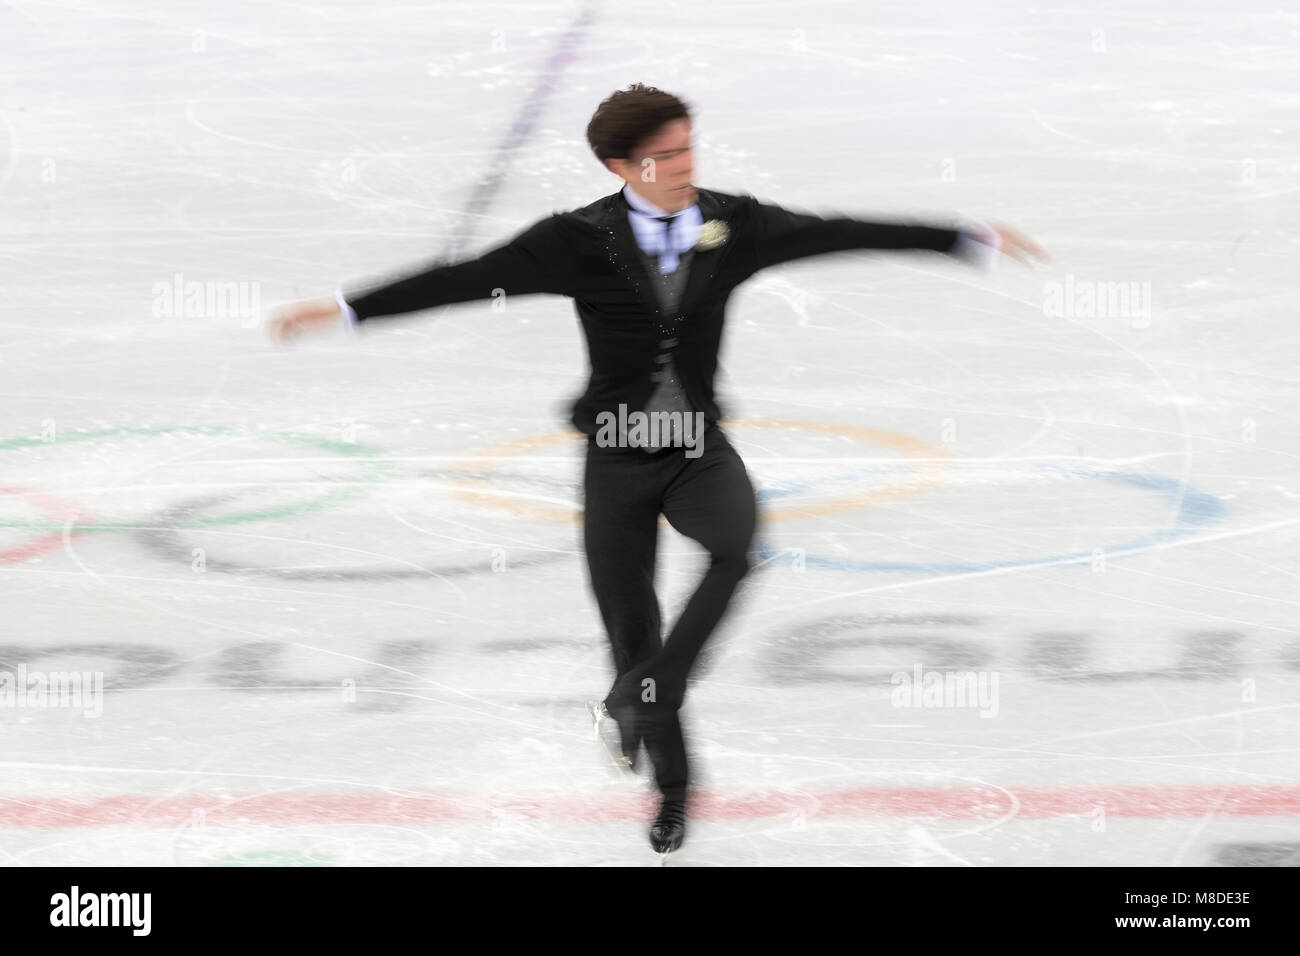 Keegan Messing (CAN) competir en el patinaje artístico,s hombres solteros la libre competencia en los Juegos Olímpicos de Invierno PyeongChang 2018 Foto de stock